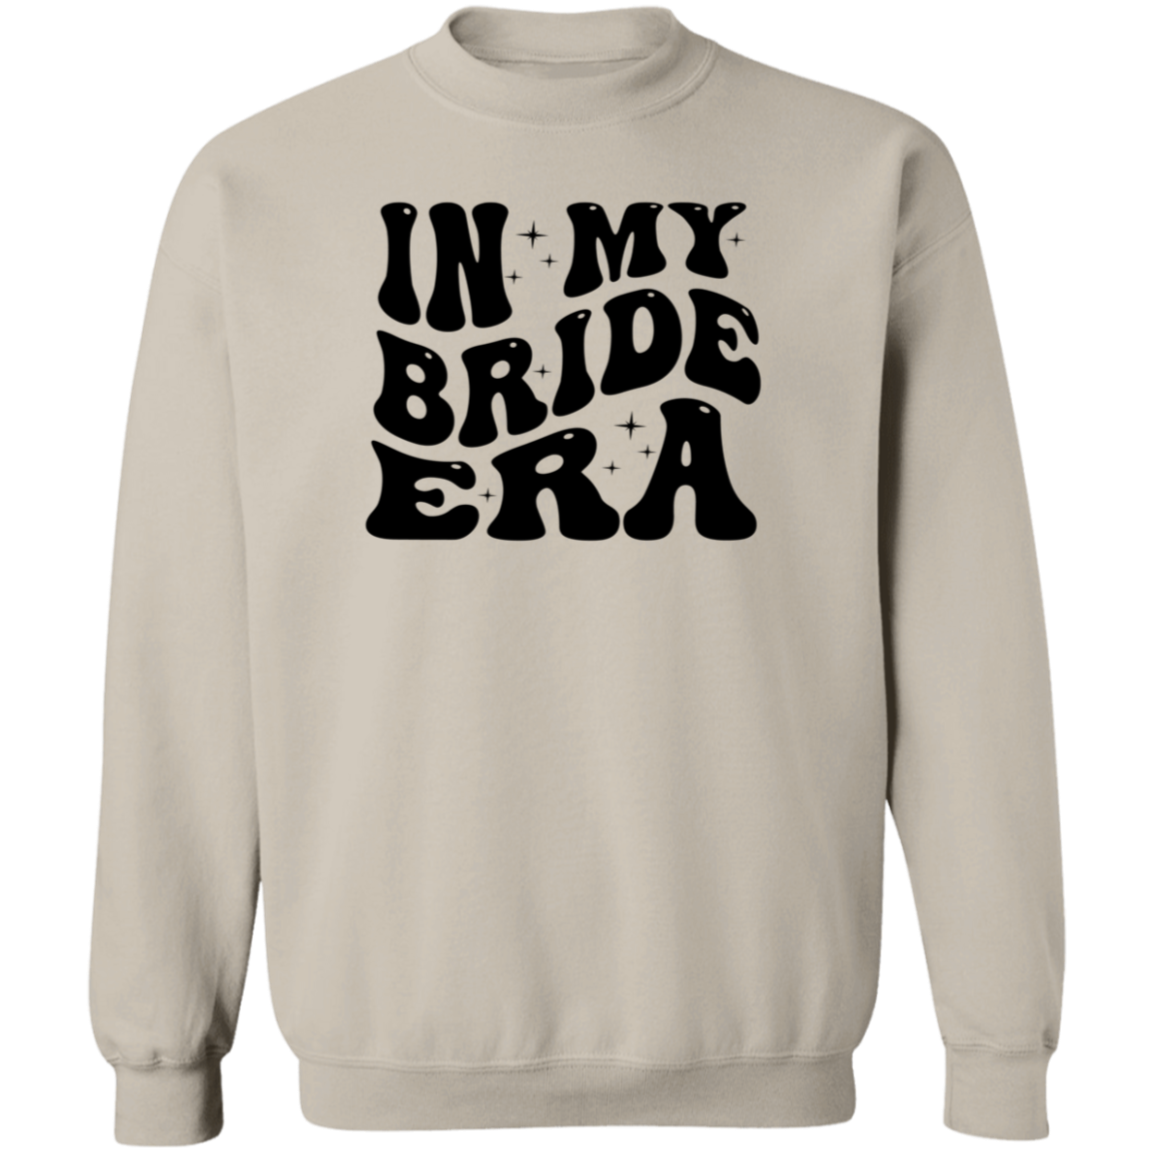 Bride Era Crewneck, Bride Era Sweatshirt